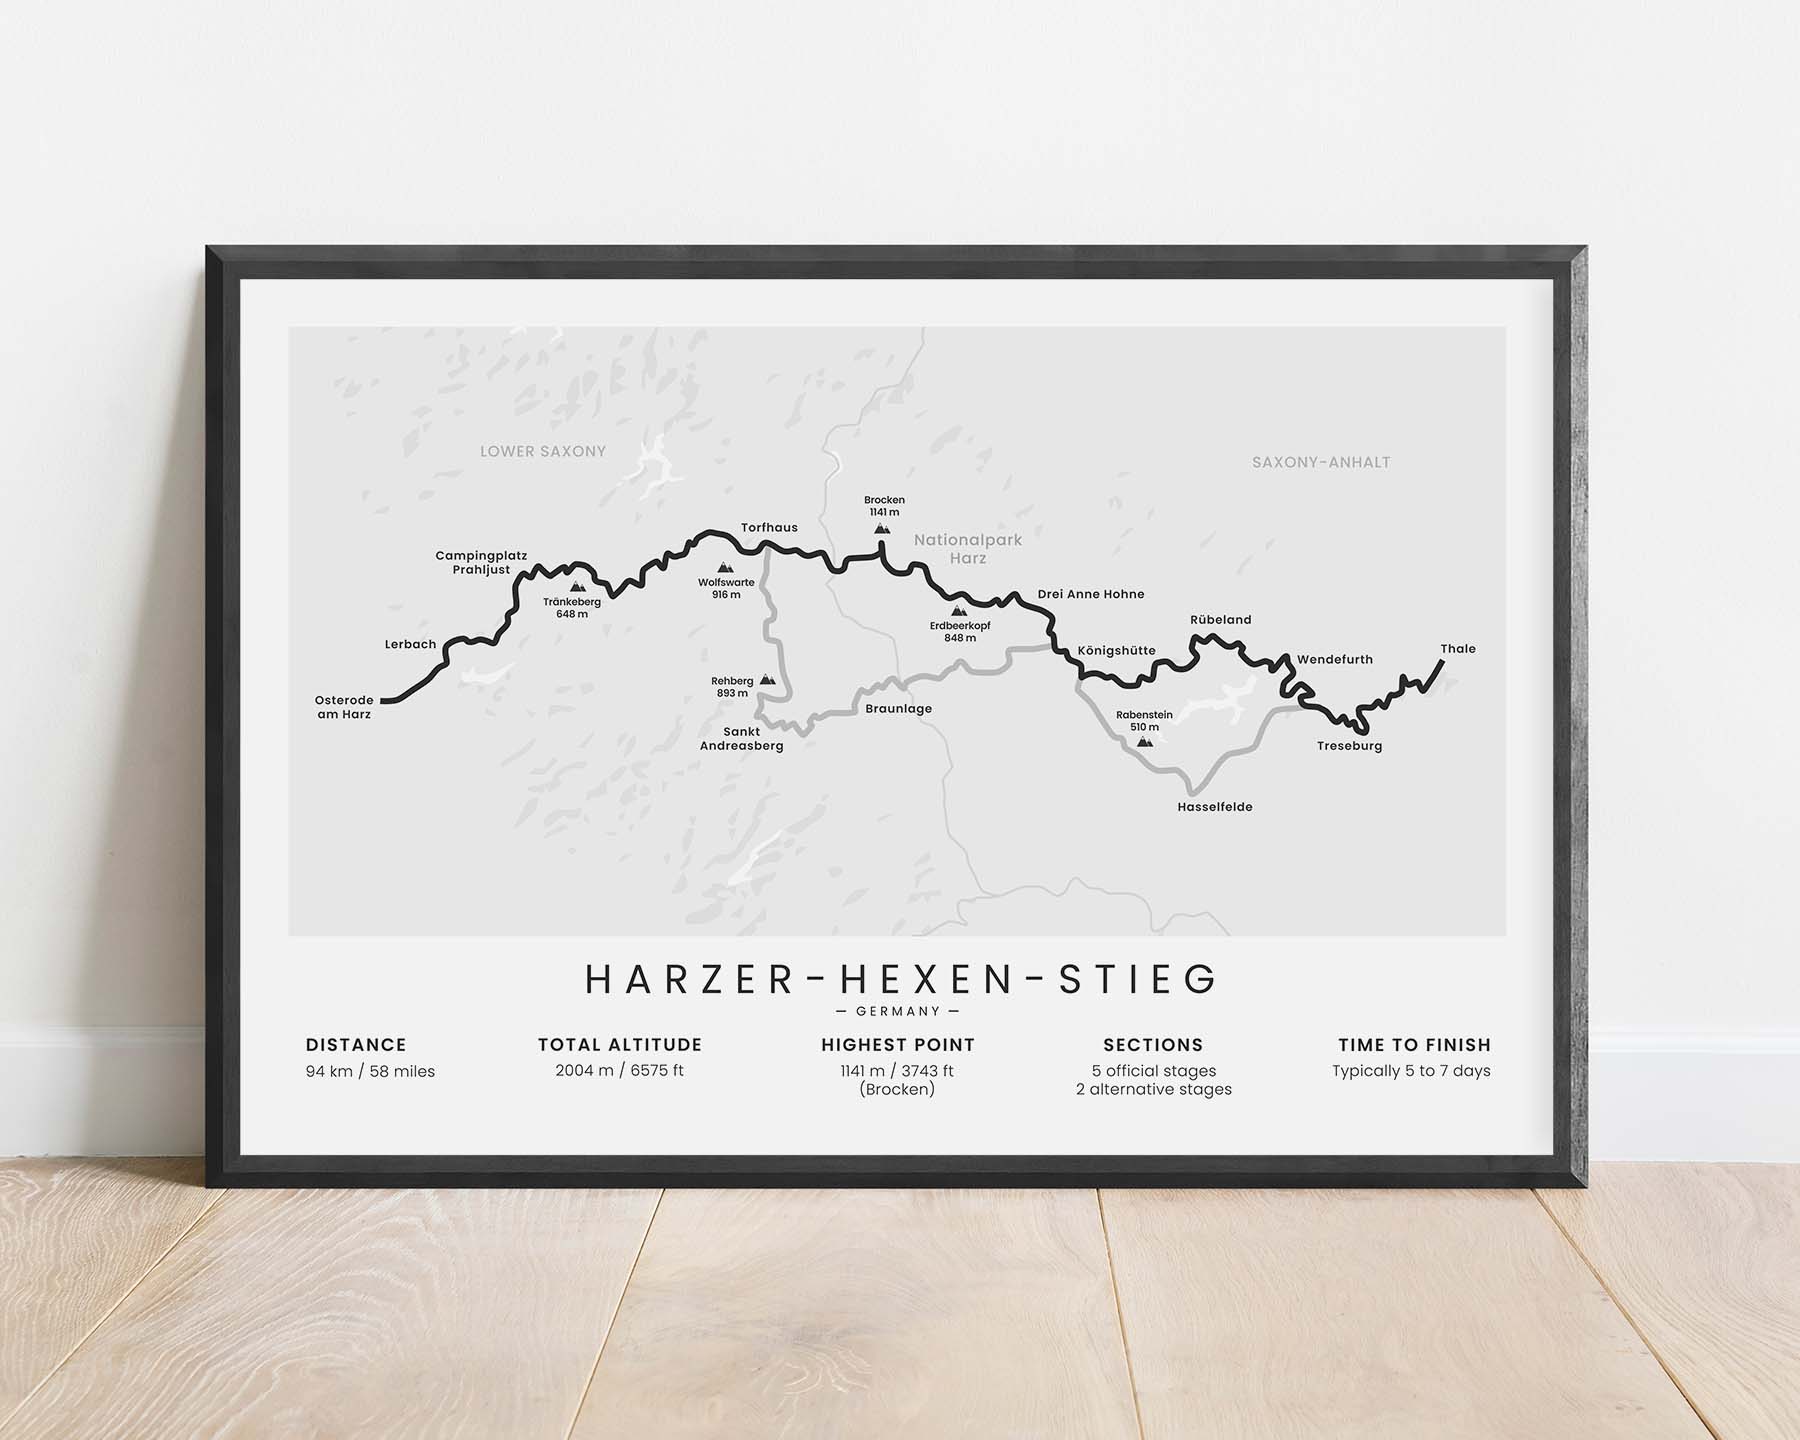 Harzer-Hexen-Stieg (Harz Mountains) Trek Poster with White Background in Minimal Room Decor